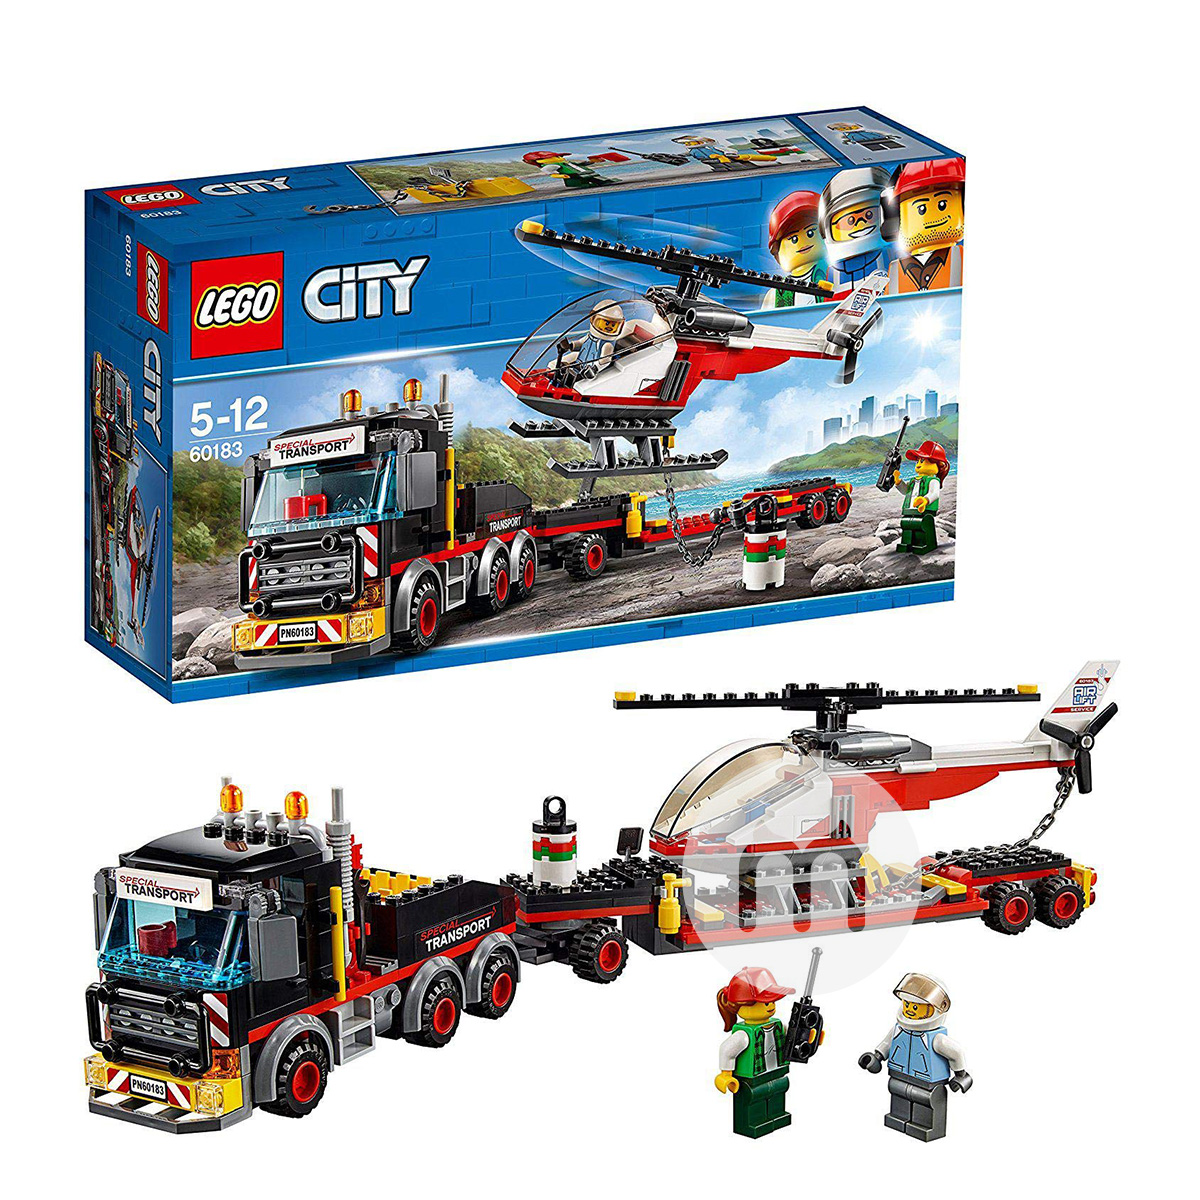 LEGO 덴마크시티시리즈중형헬리콥터운송업체 60183 해외판